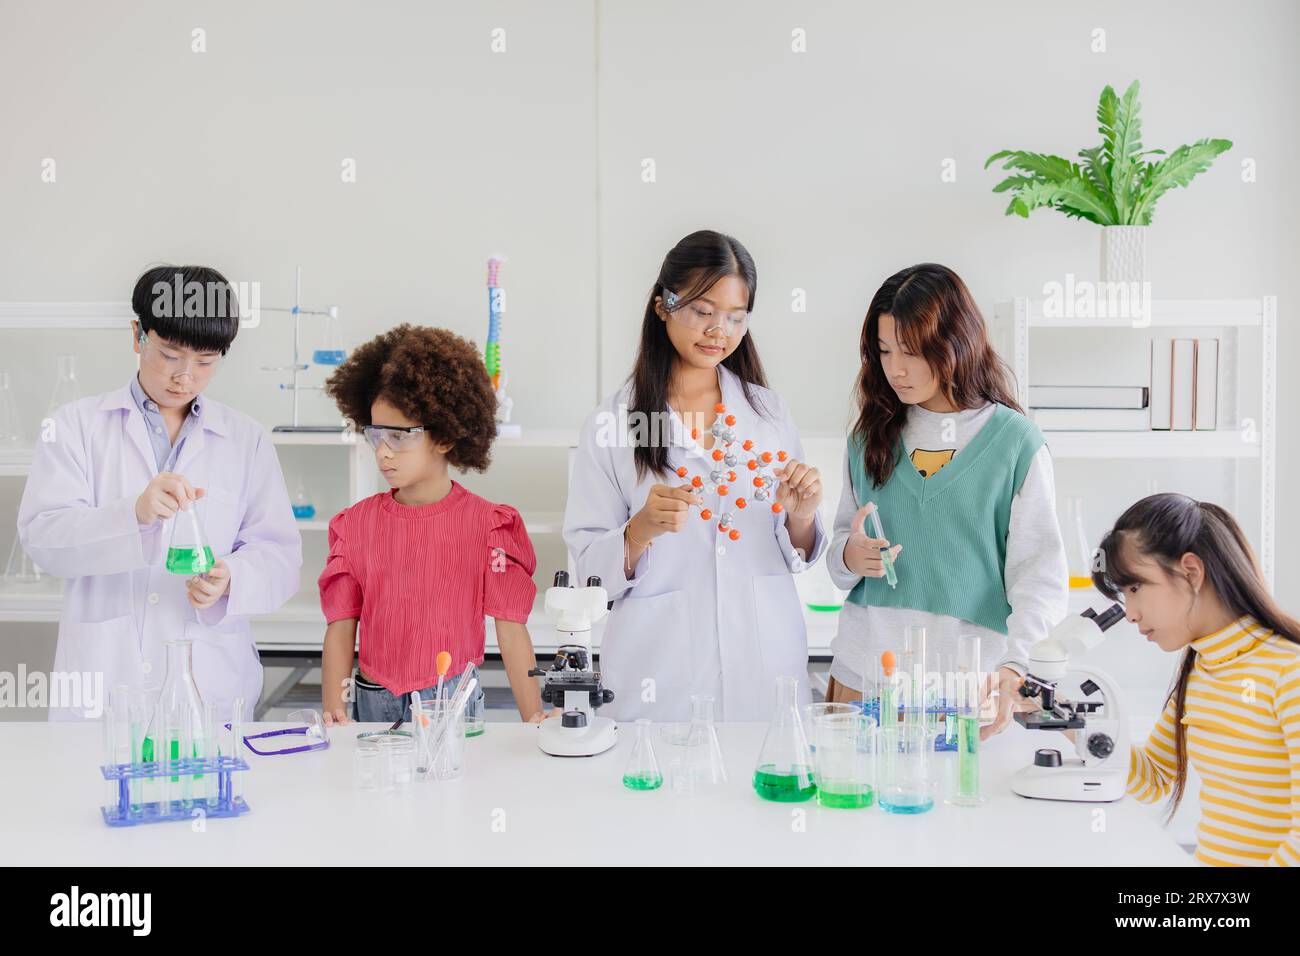 Gruppo di bambini ragazzi adolescenti che giocano in un laboratorio chimico scientifico per l'educazione scolastica Foto Stock